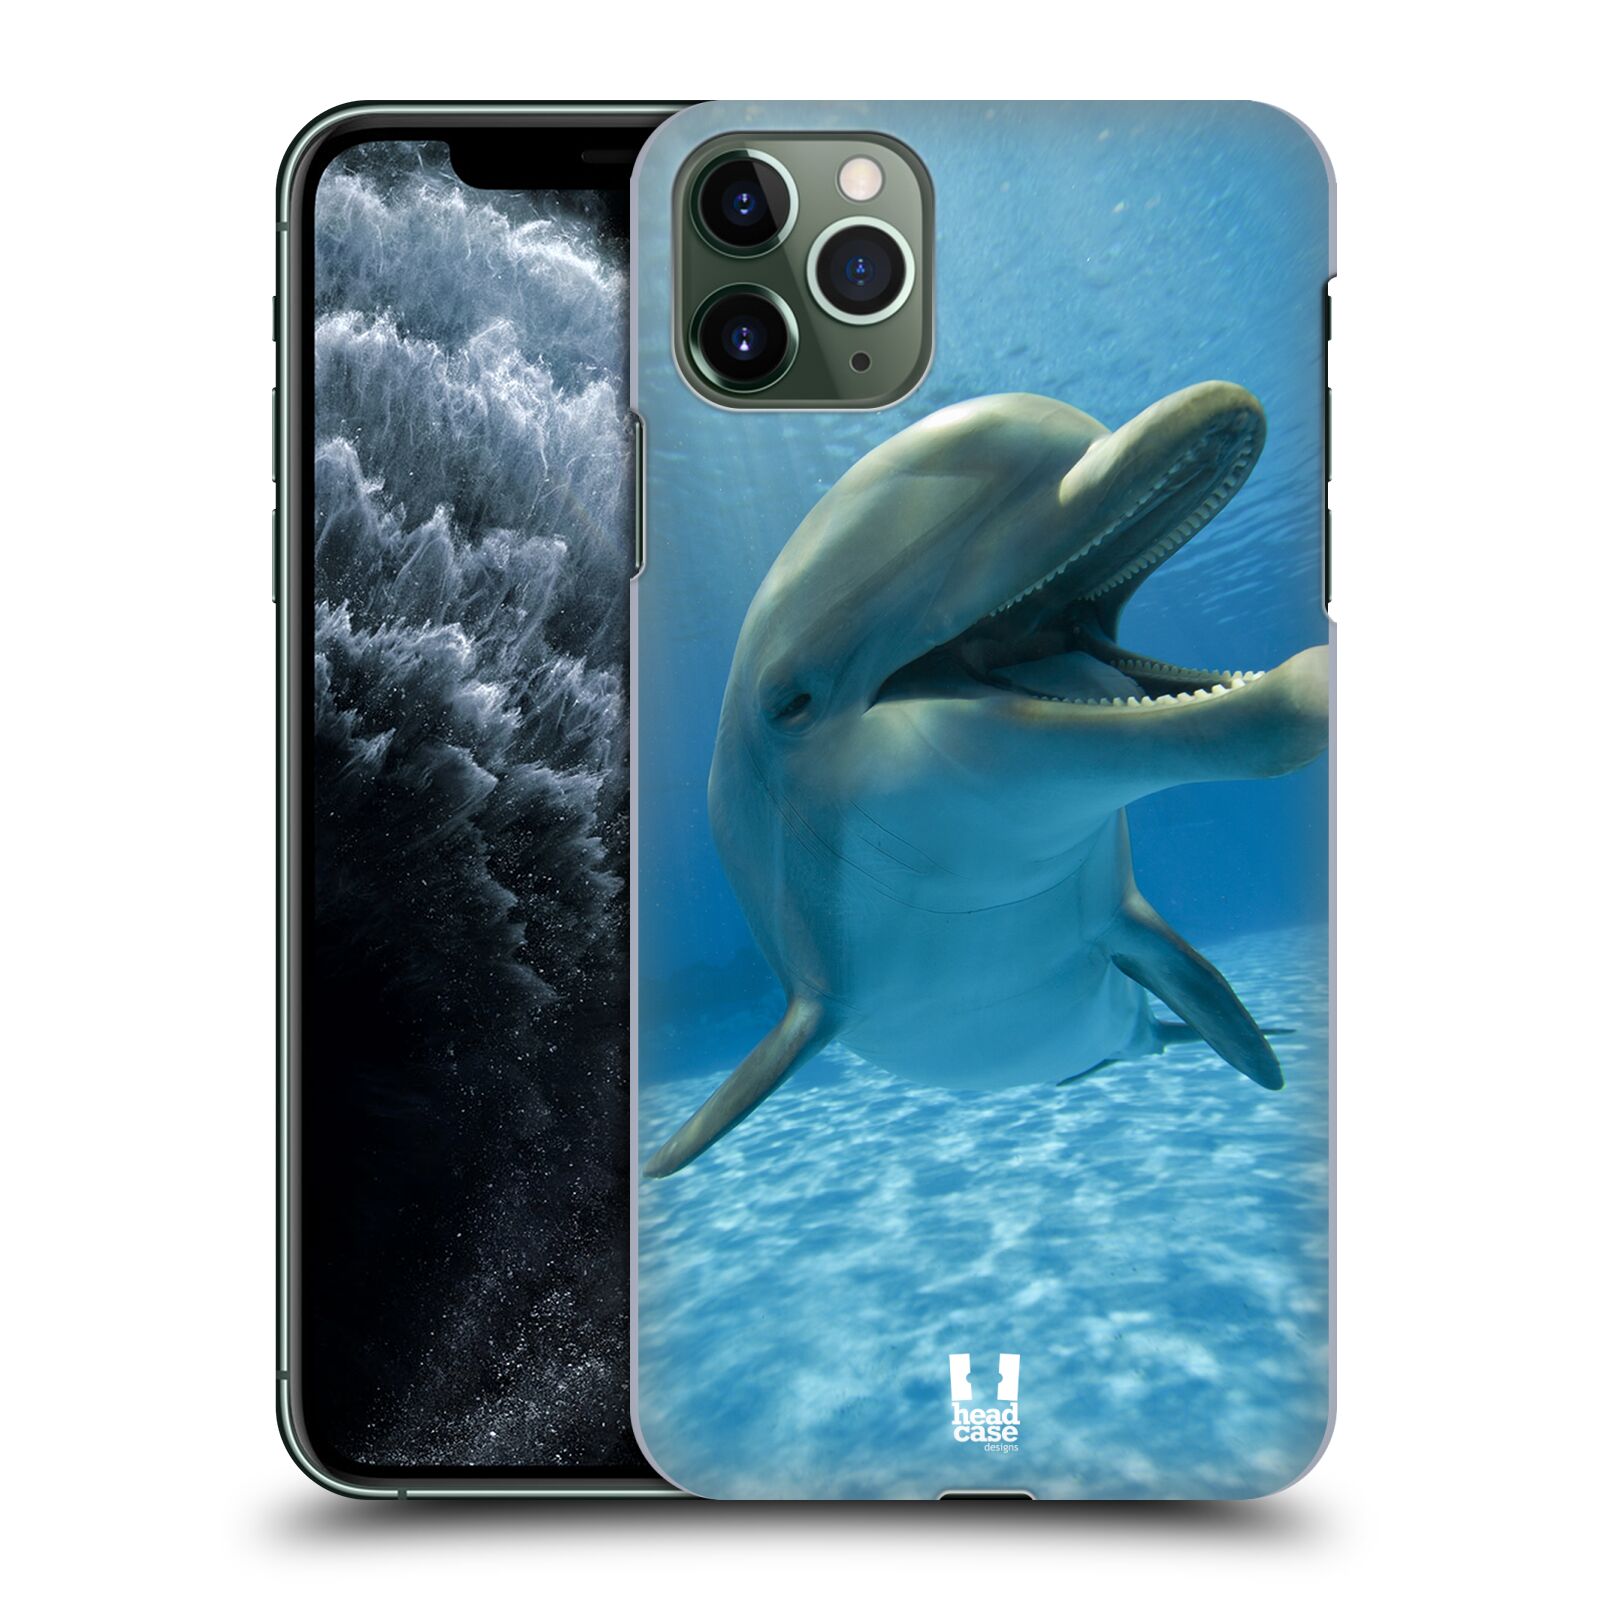 Zadní obal pro mobil Apple Iphone 11 PRO MAX - HEAD CASE - Svět zvířat delfín v moři